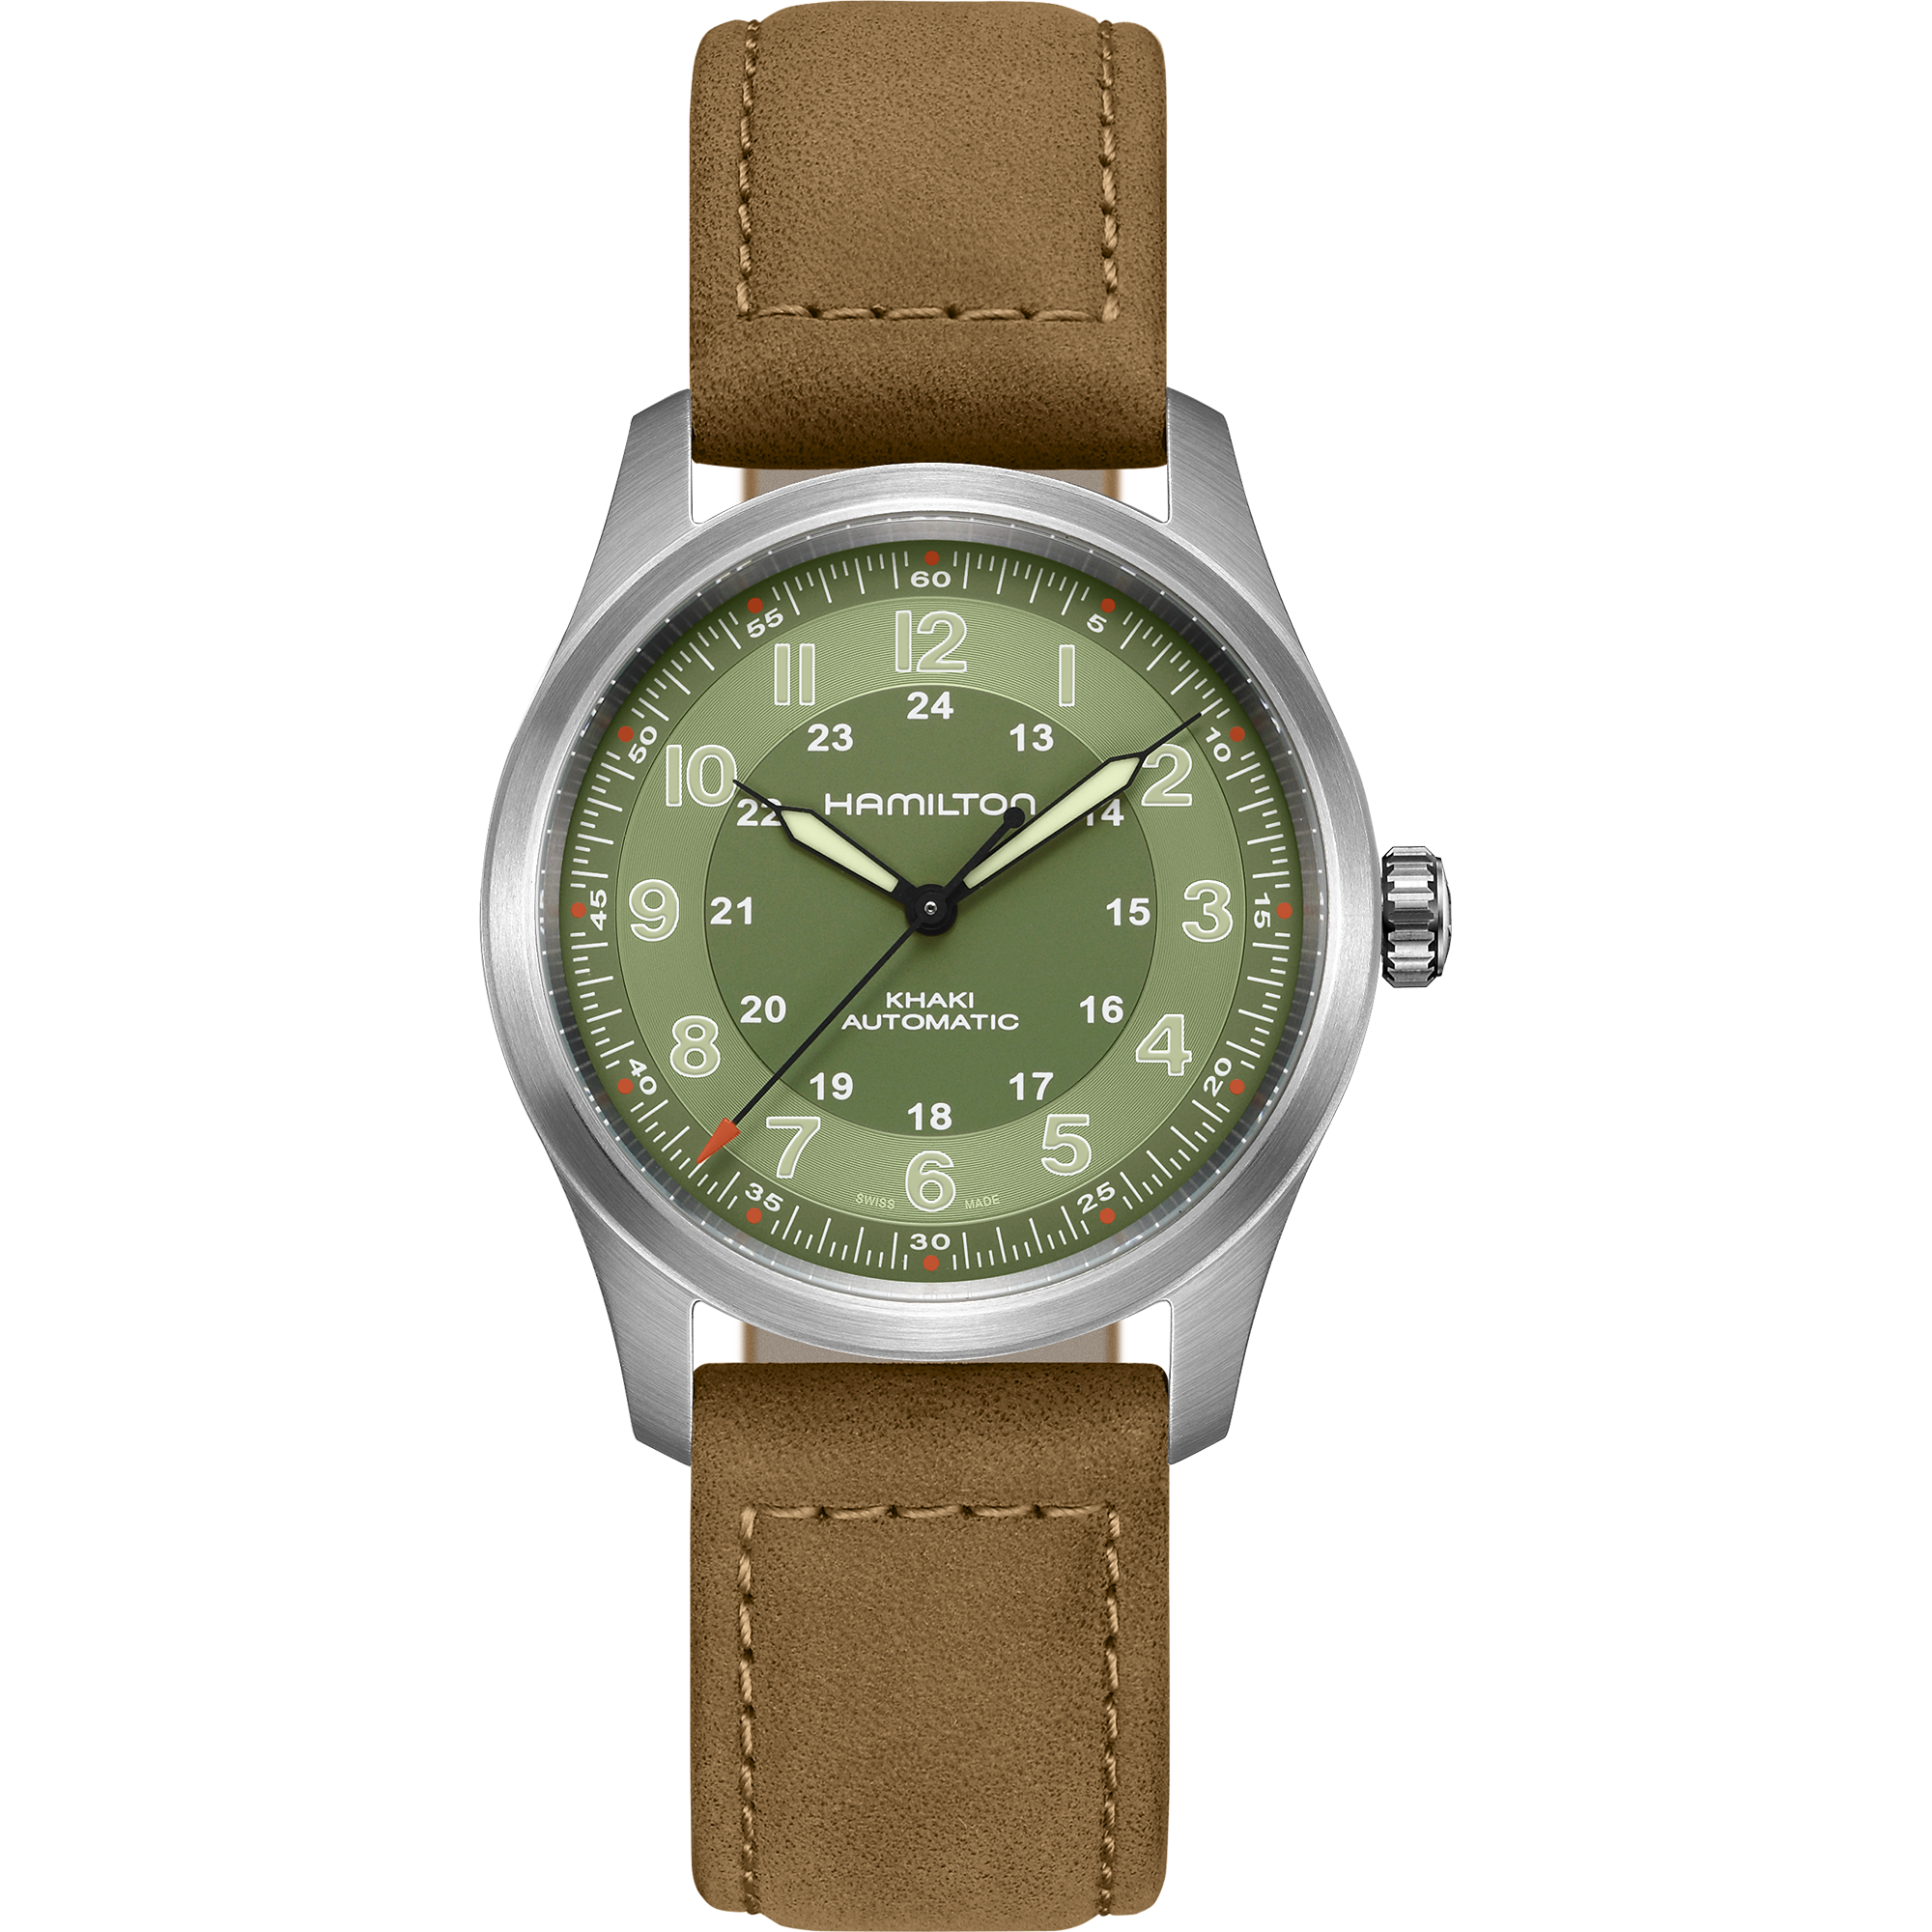 Khaki Field Titanium - Green dial - Brown strap - H70205860